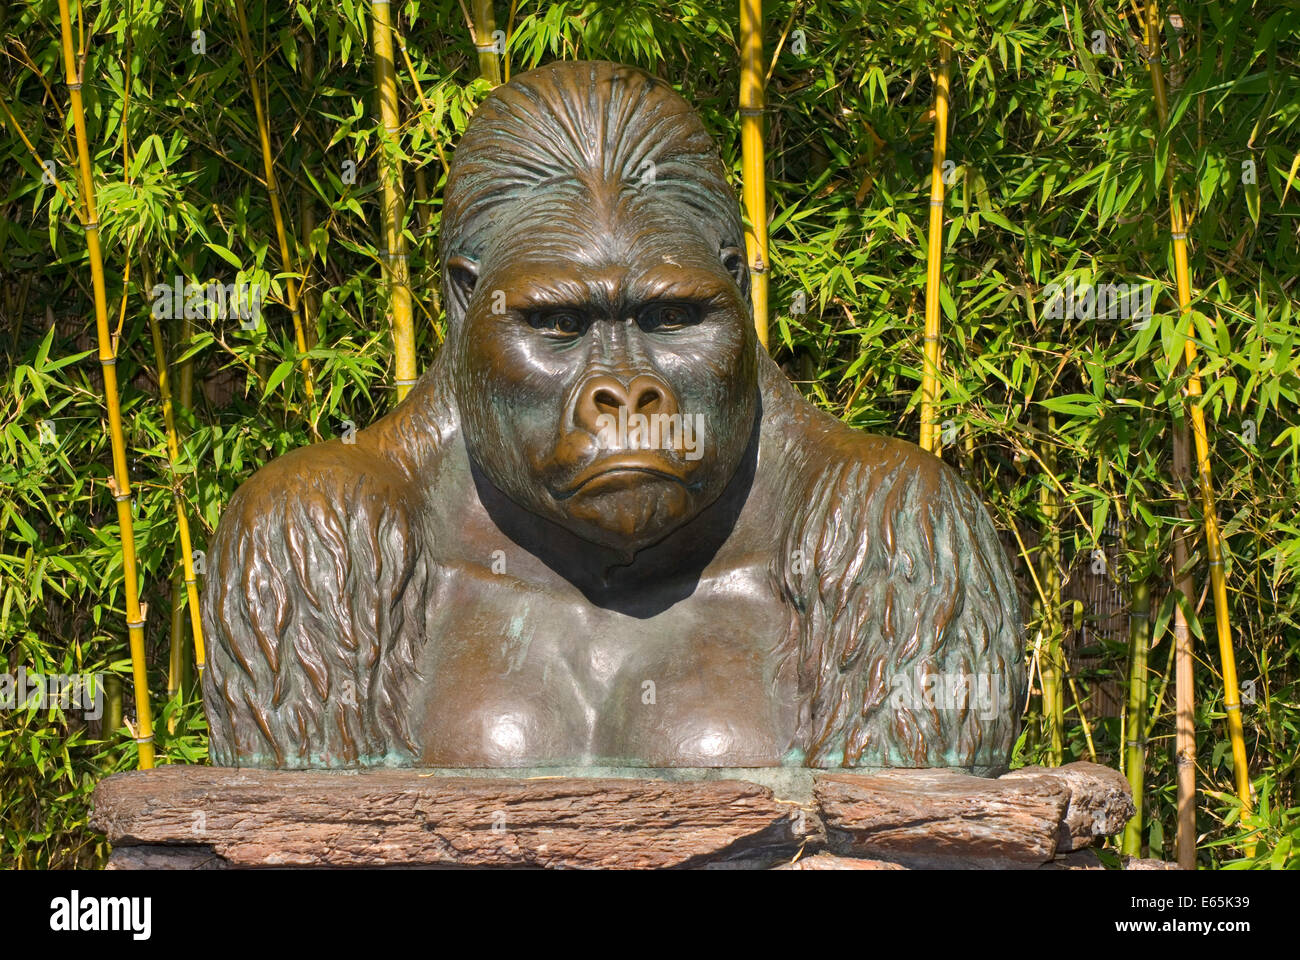 Gorilla statue, San Diego Zoo, Balboa Park, San Diego, California Stock ...